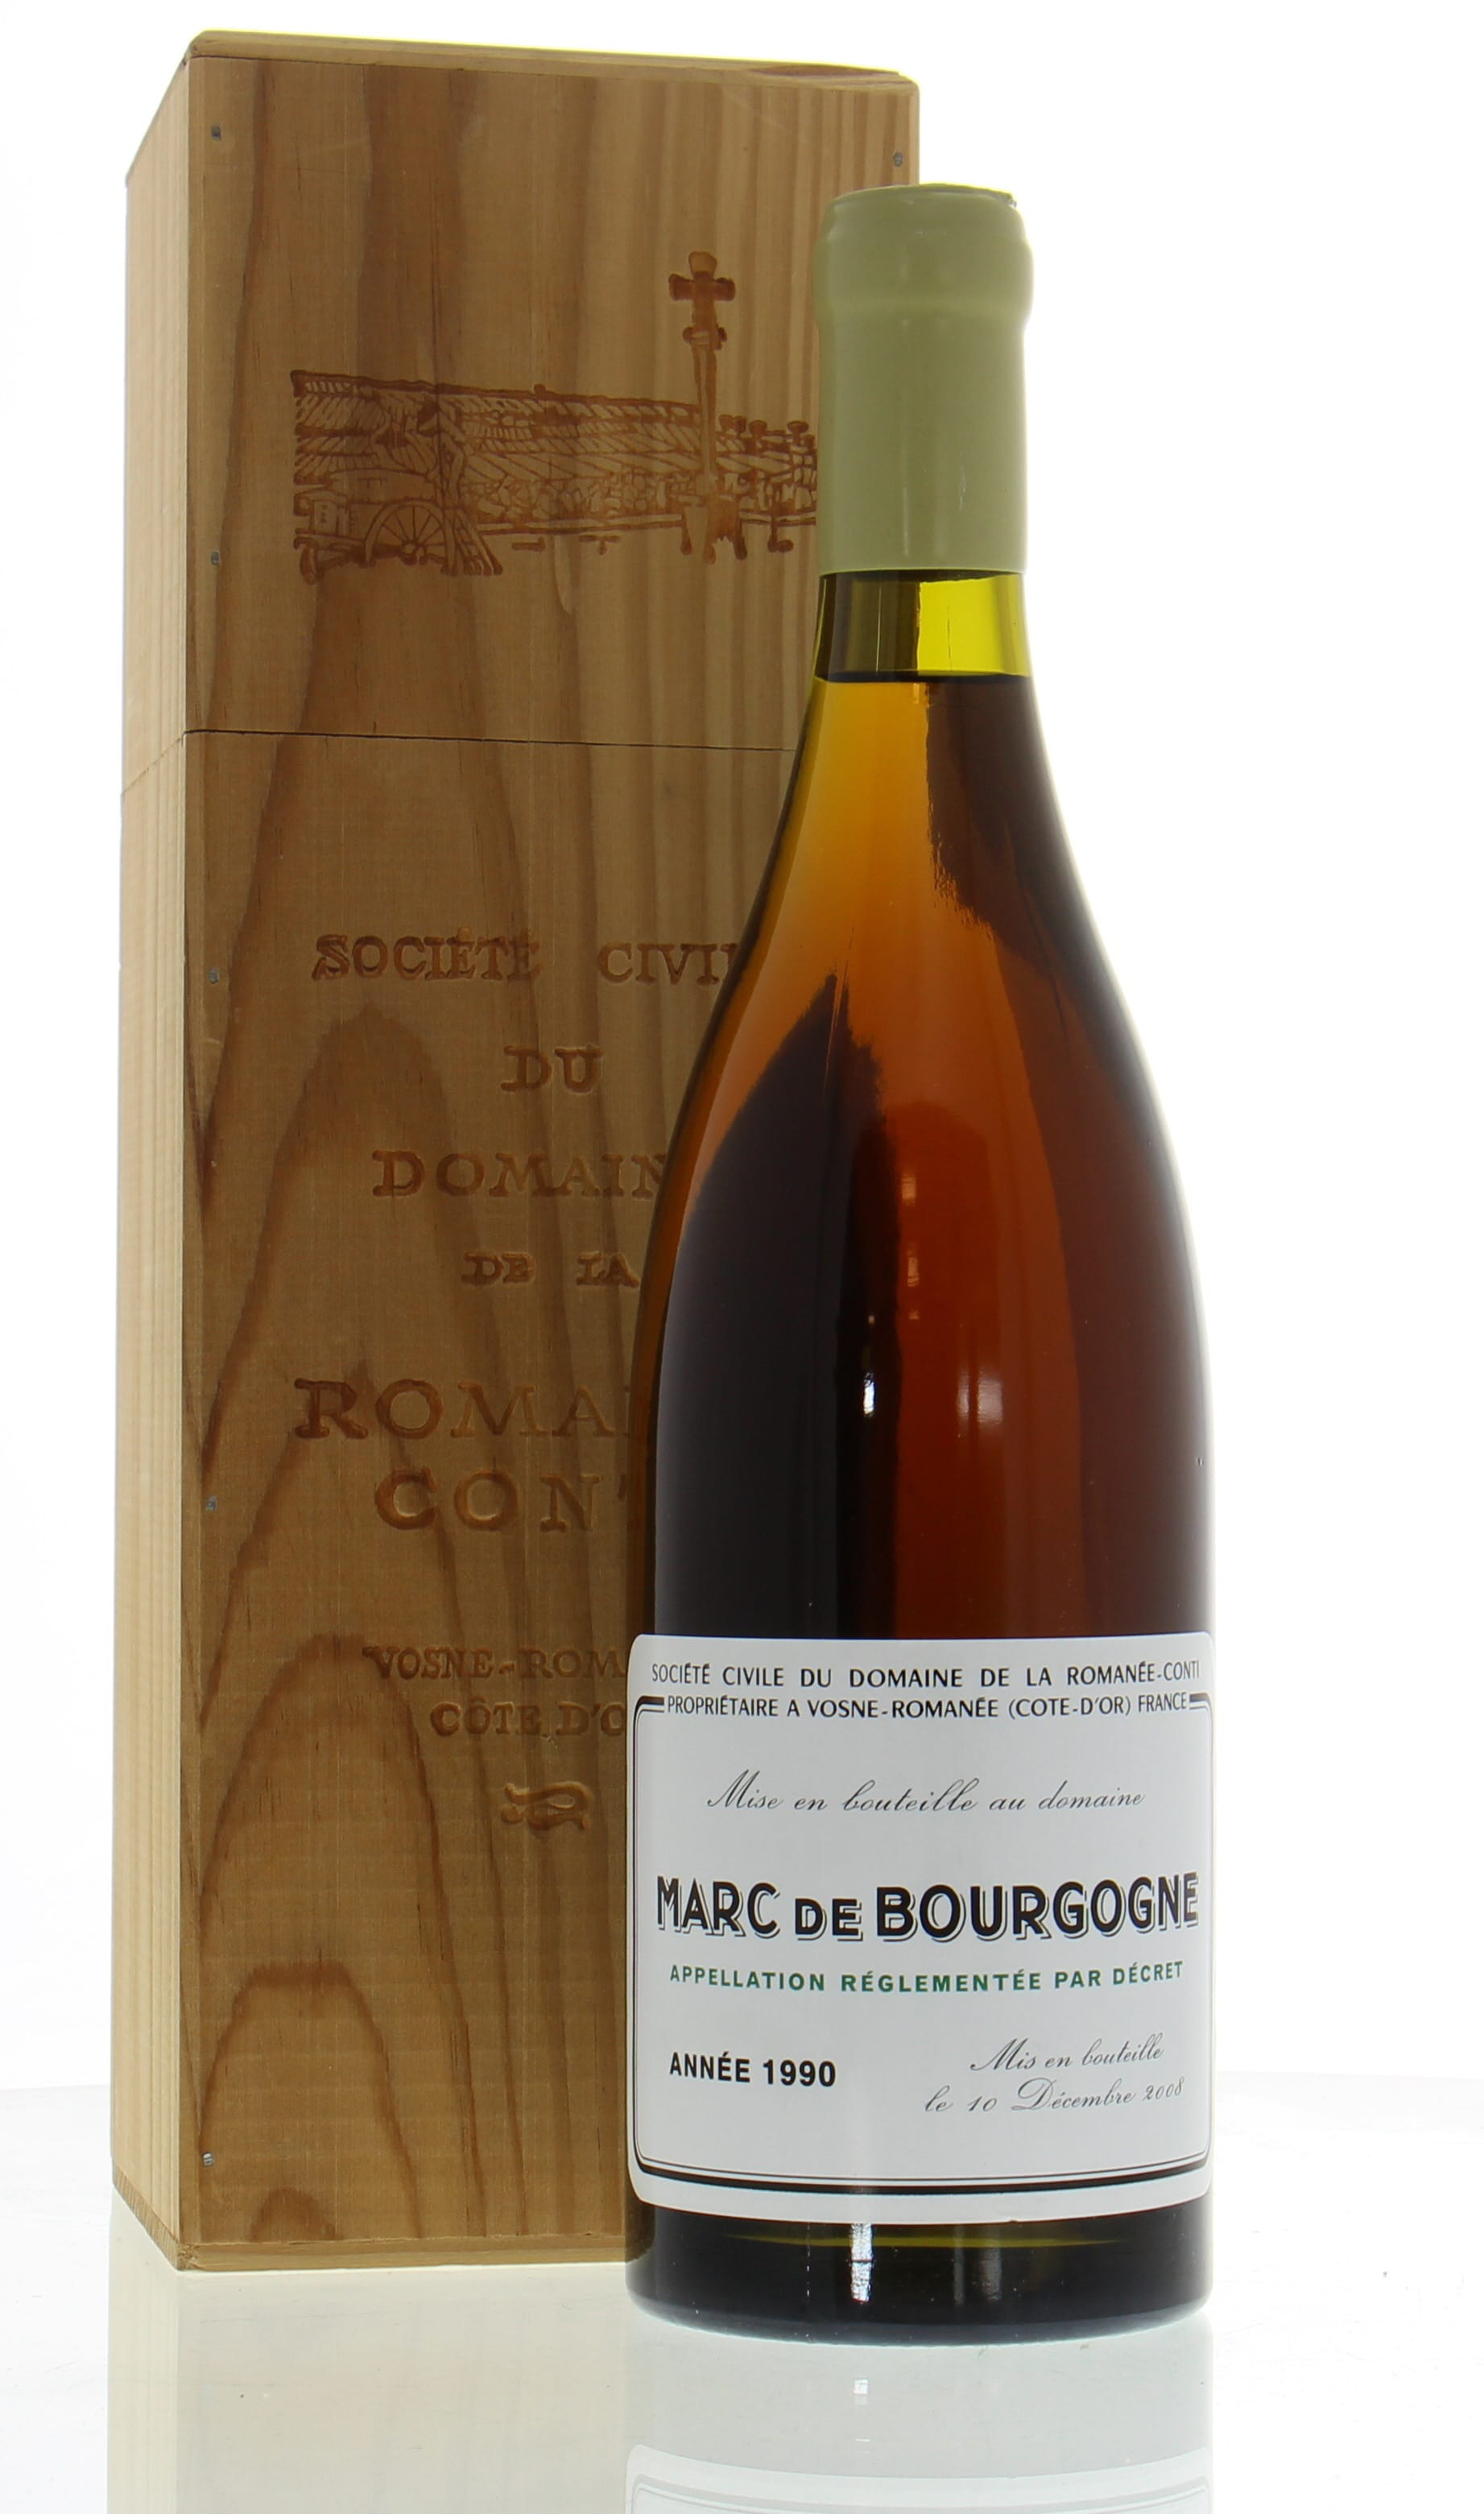 Domaine de la Romanee Conti - Marc de Bourgogne 1990 From Original Wooden Case